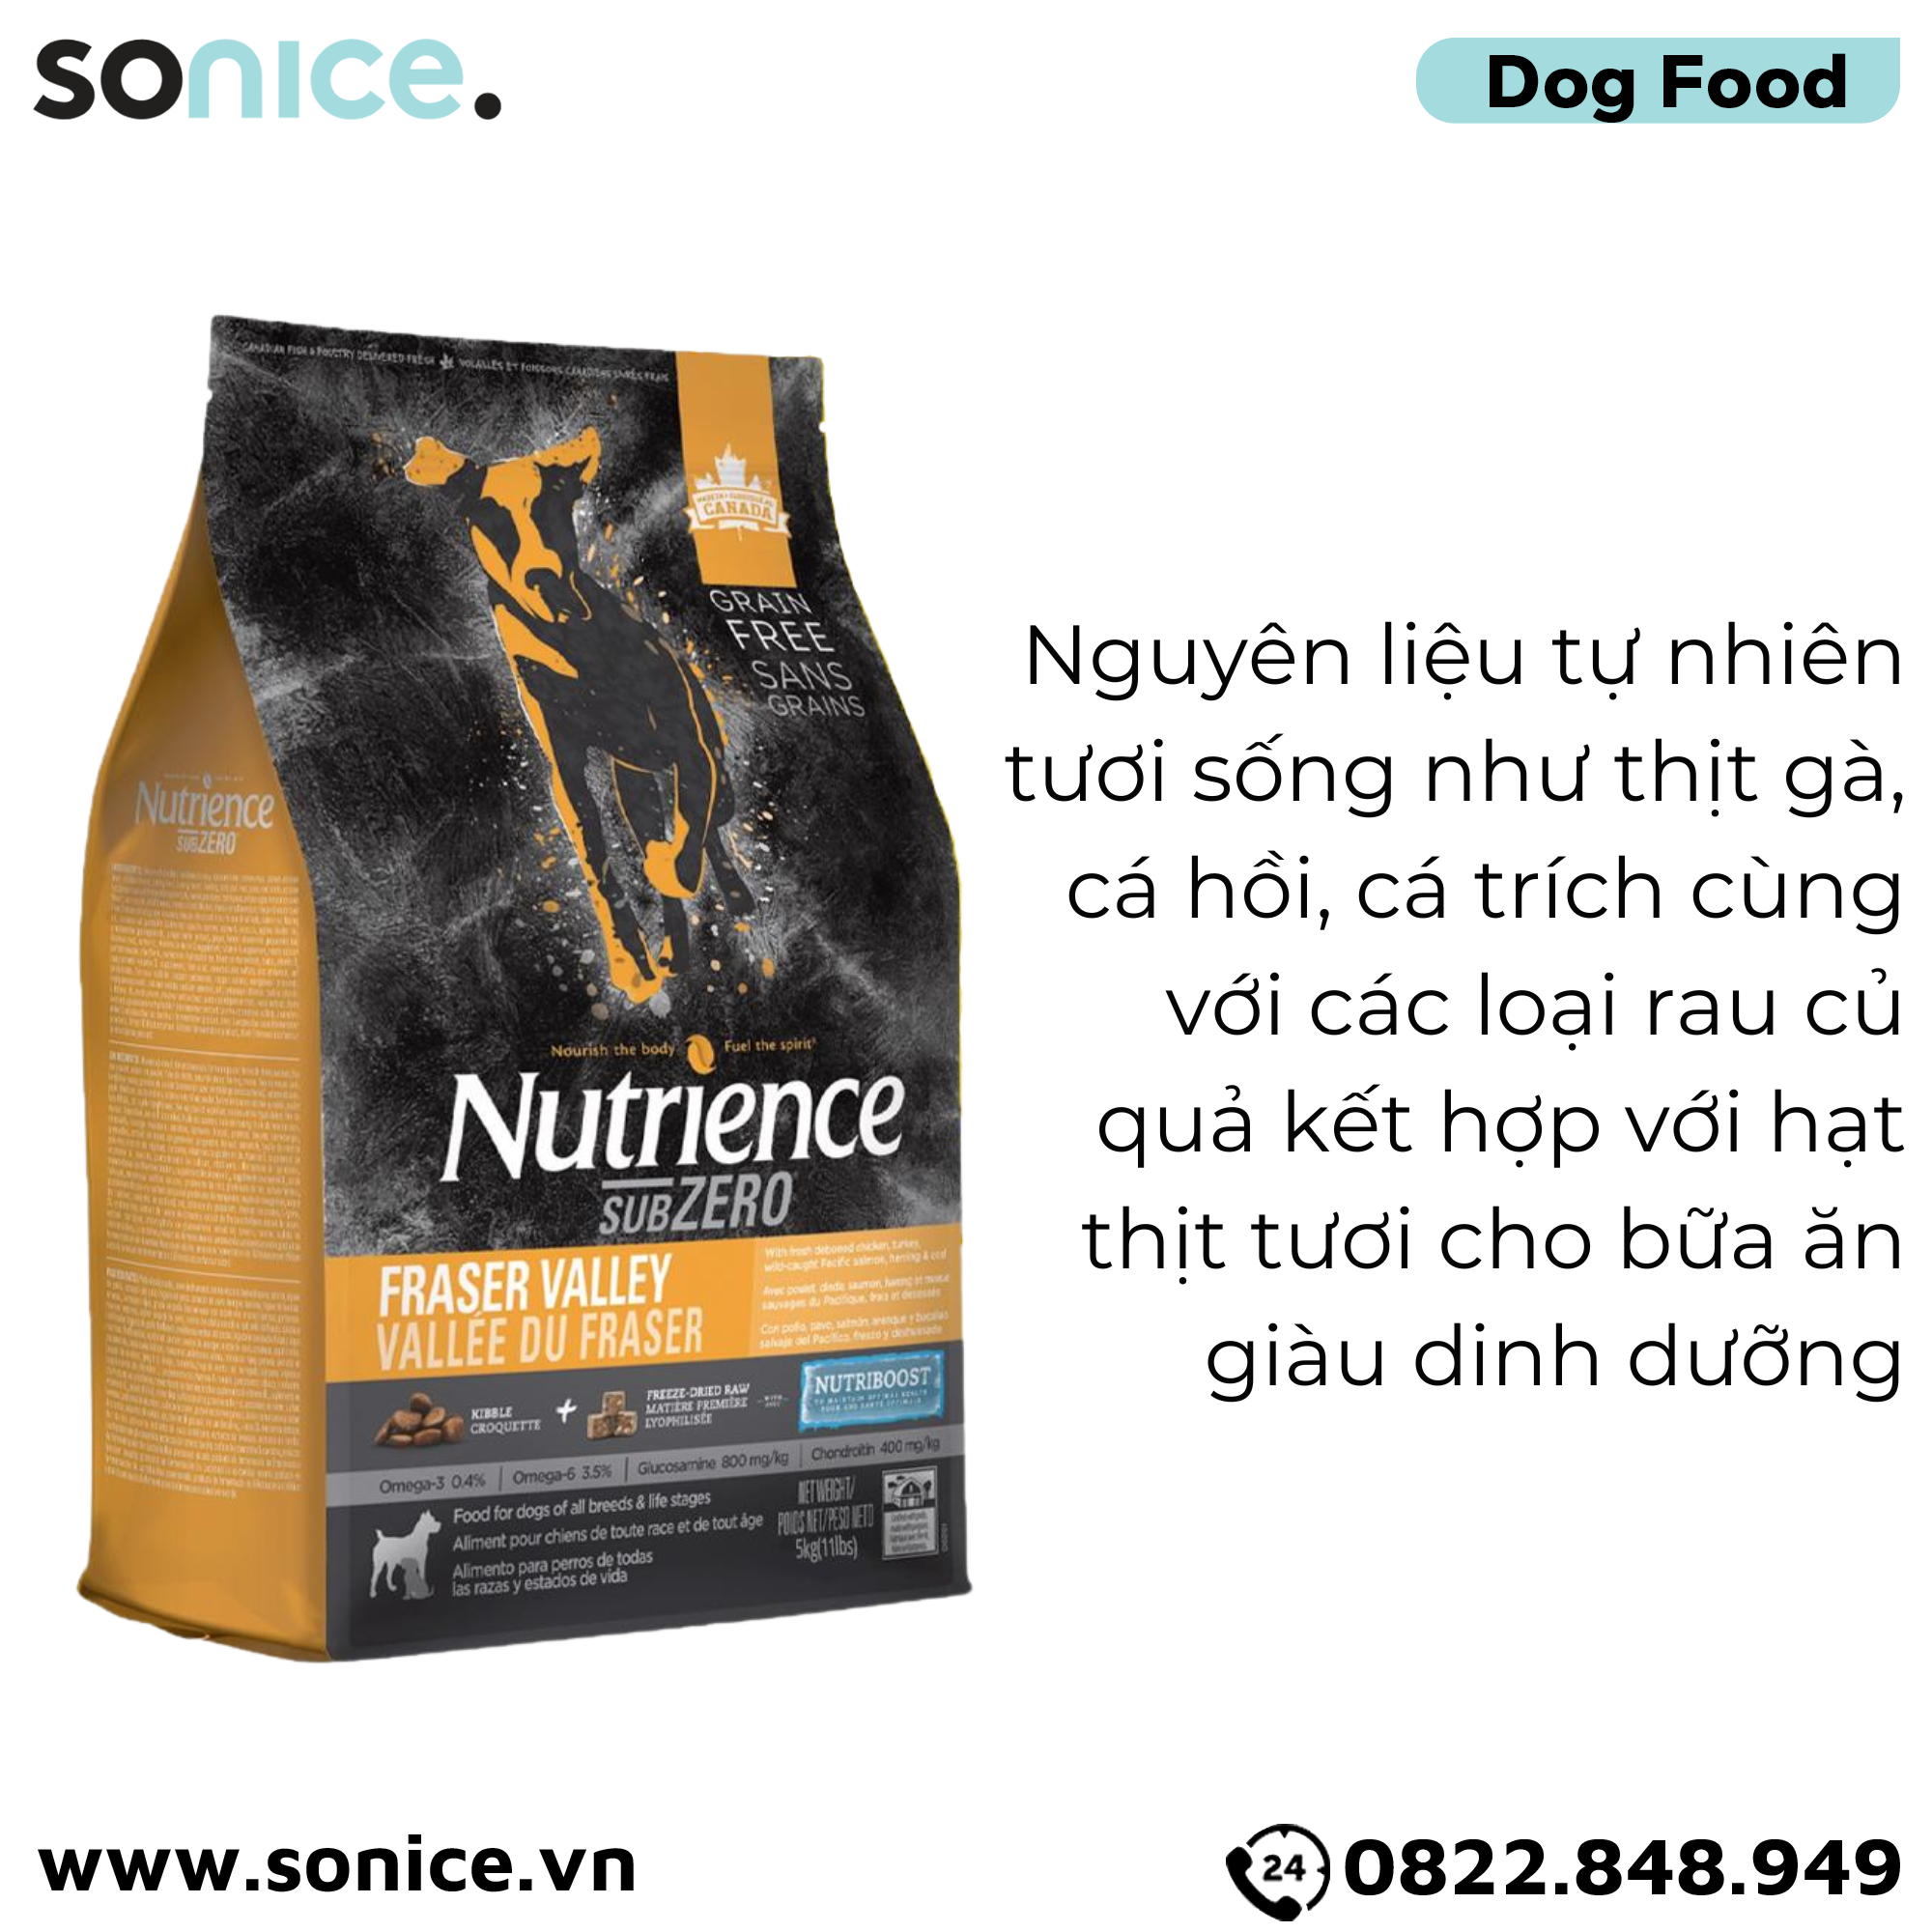  Thức ăn chó Nutrience SubZero Gà tây, Cá hồi, Cá trích & Rau củ 5kg - Cho chó mọi lứa tuổi SONICE. 